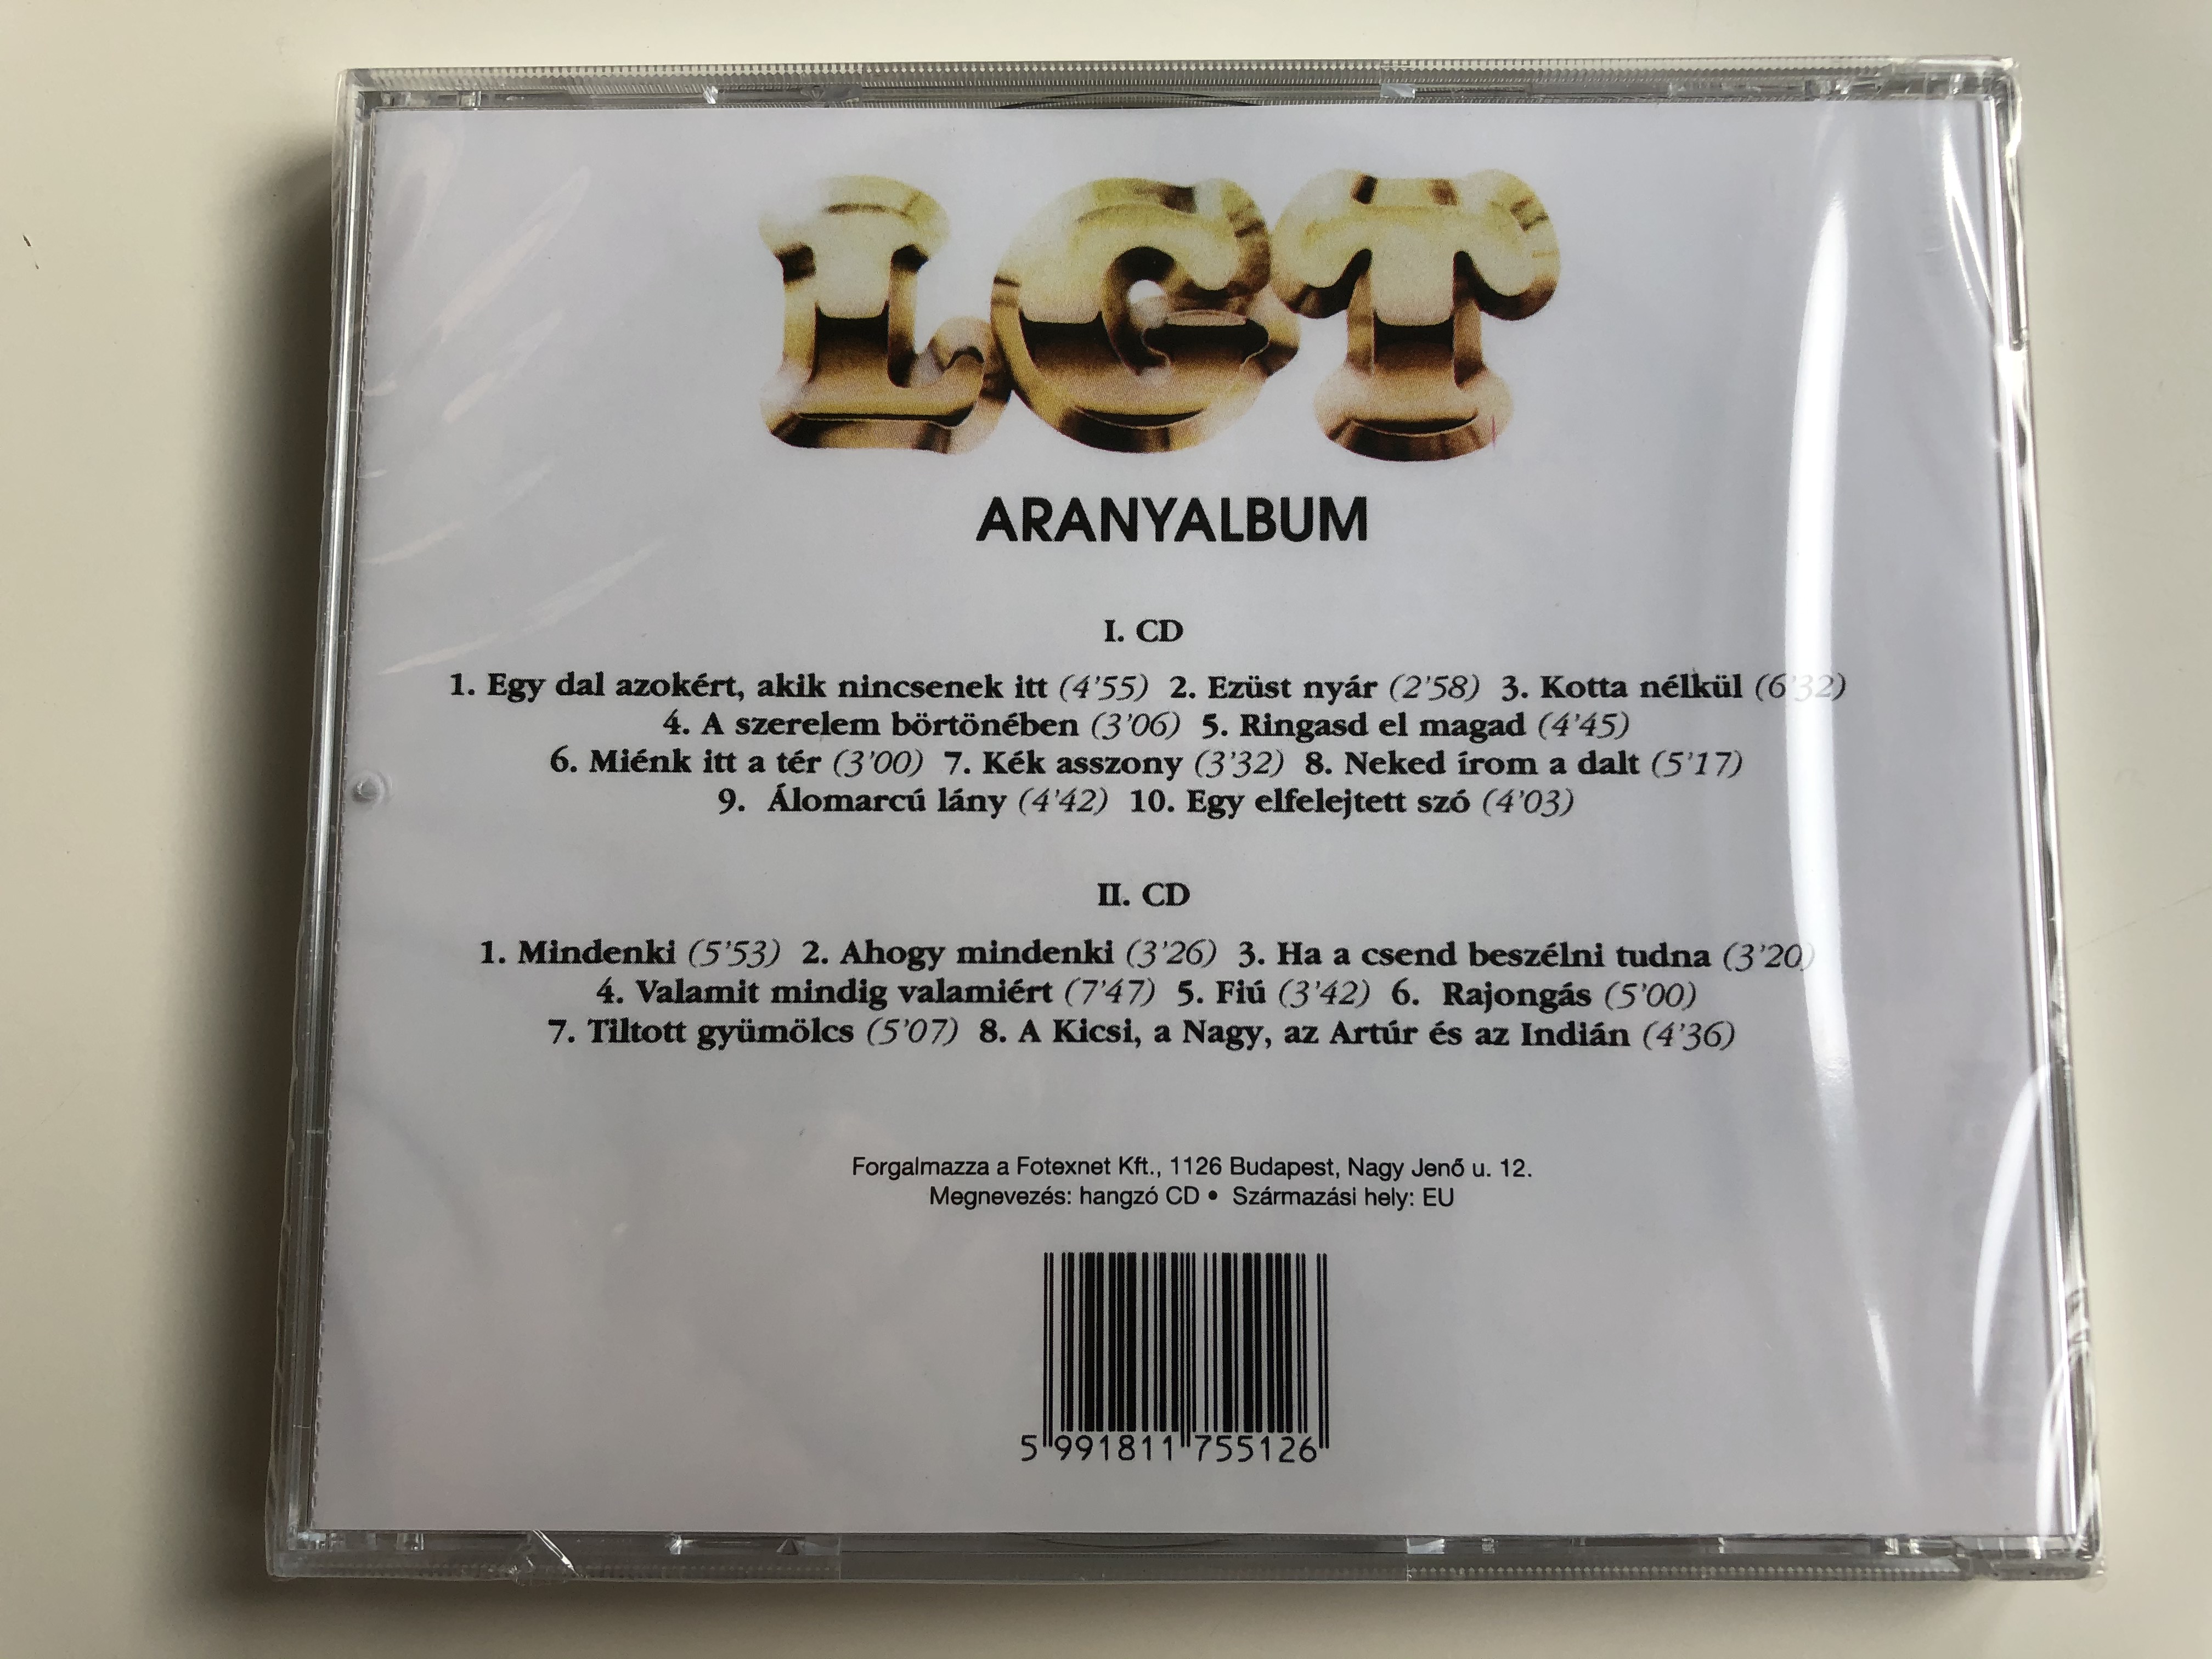 locomotiv-gt-aranyalbum-1971-76-hungaroton-2x-audio-cd-hcd-17551-52-2-.jpg